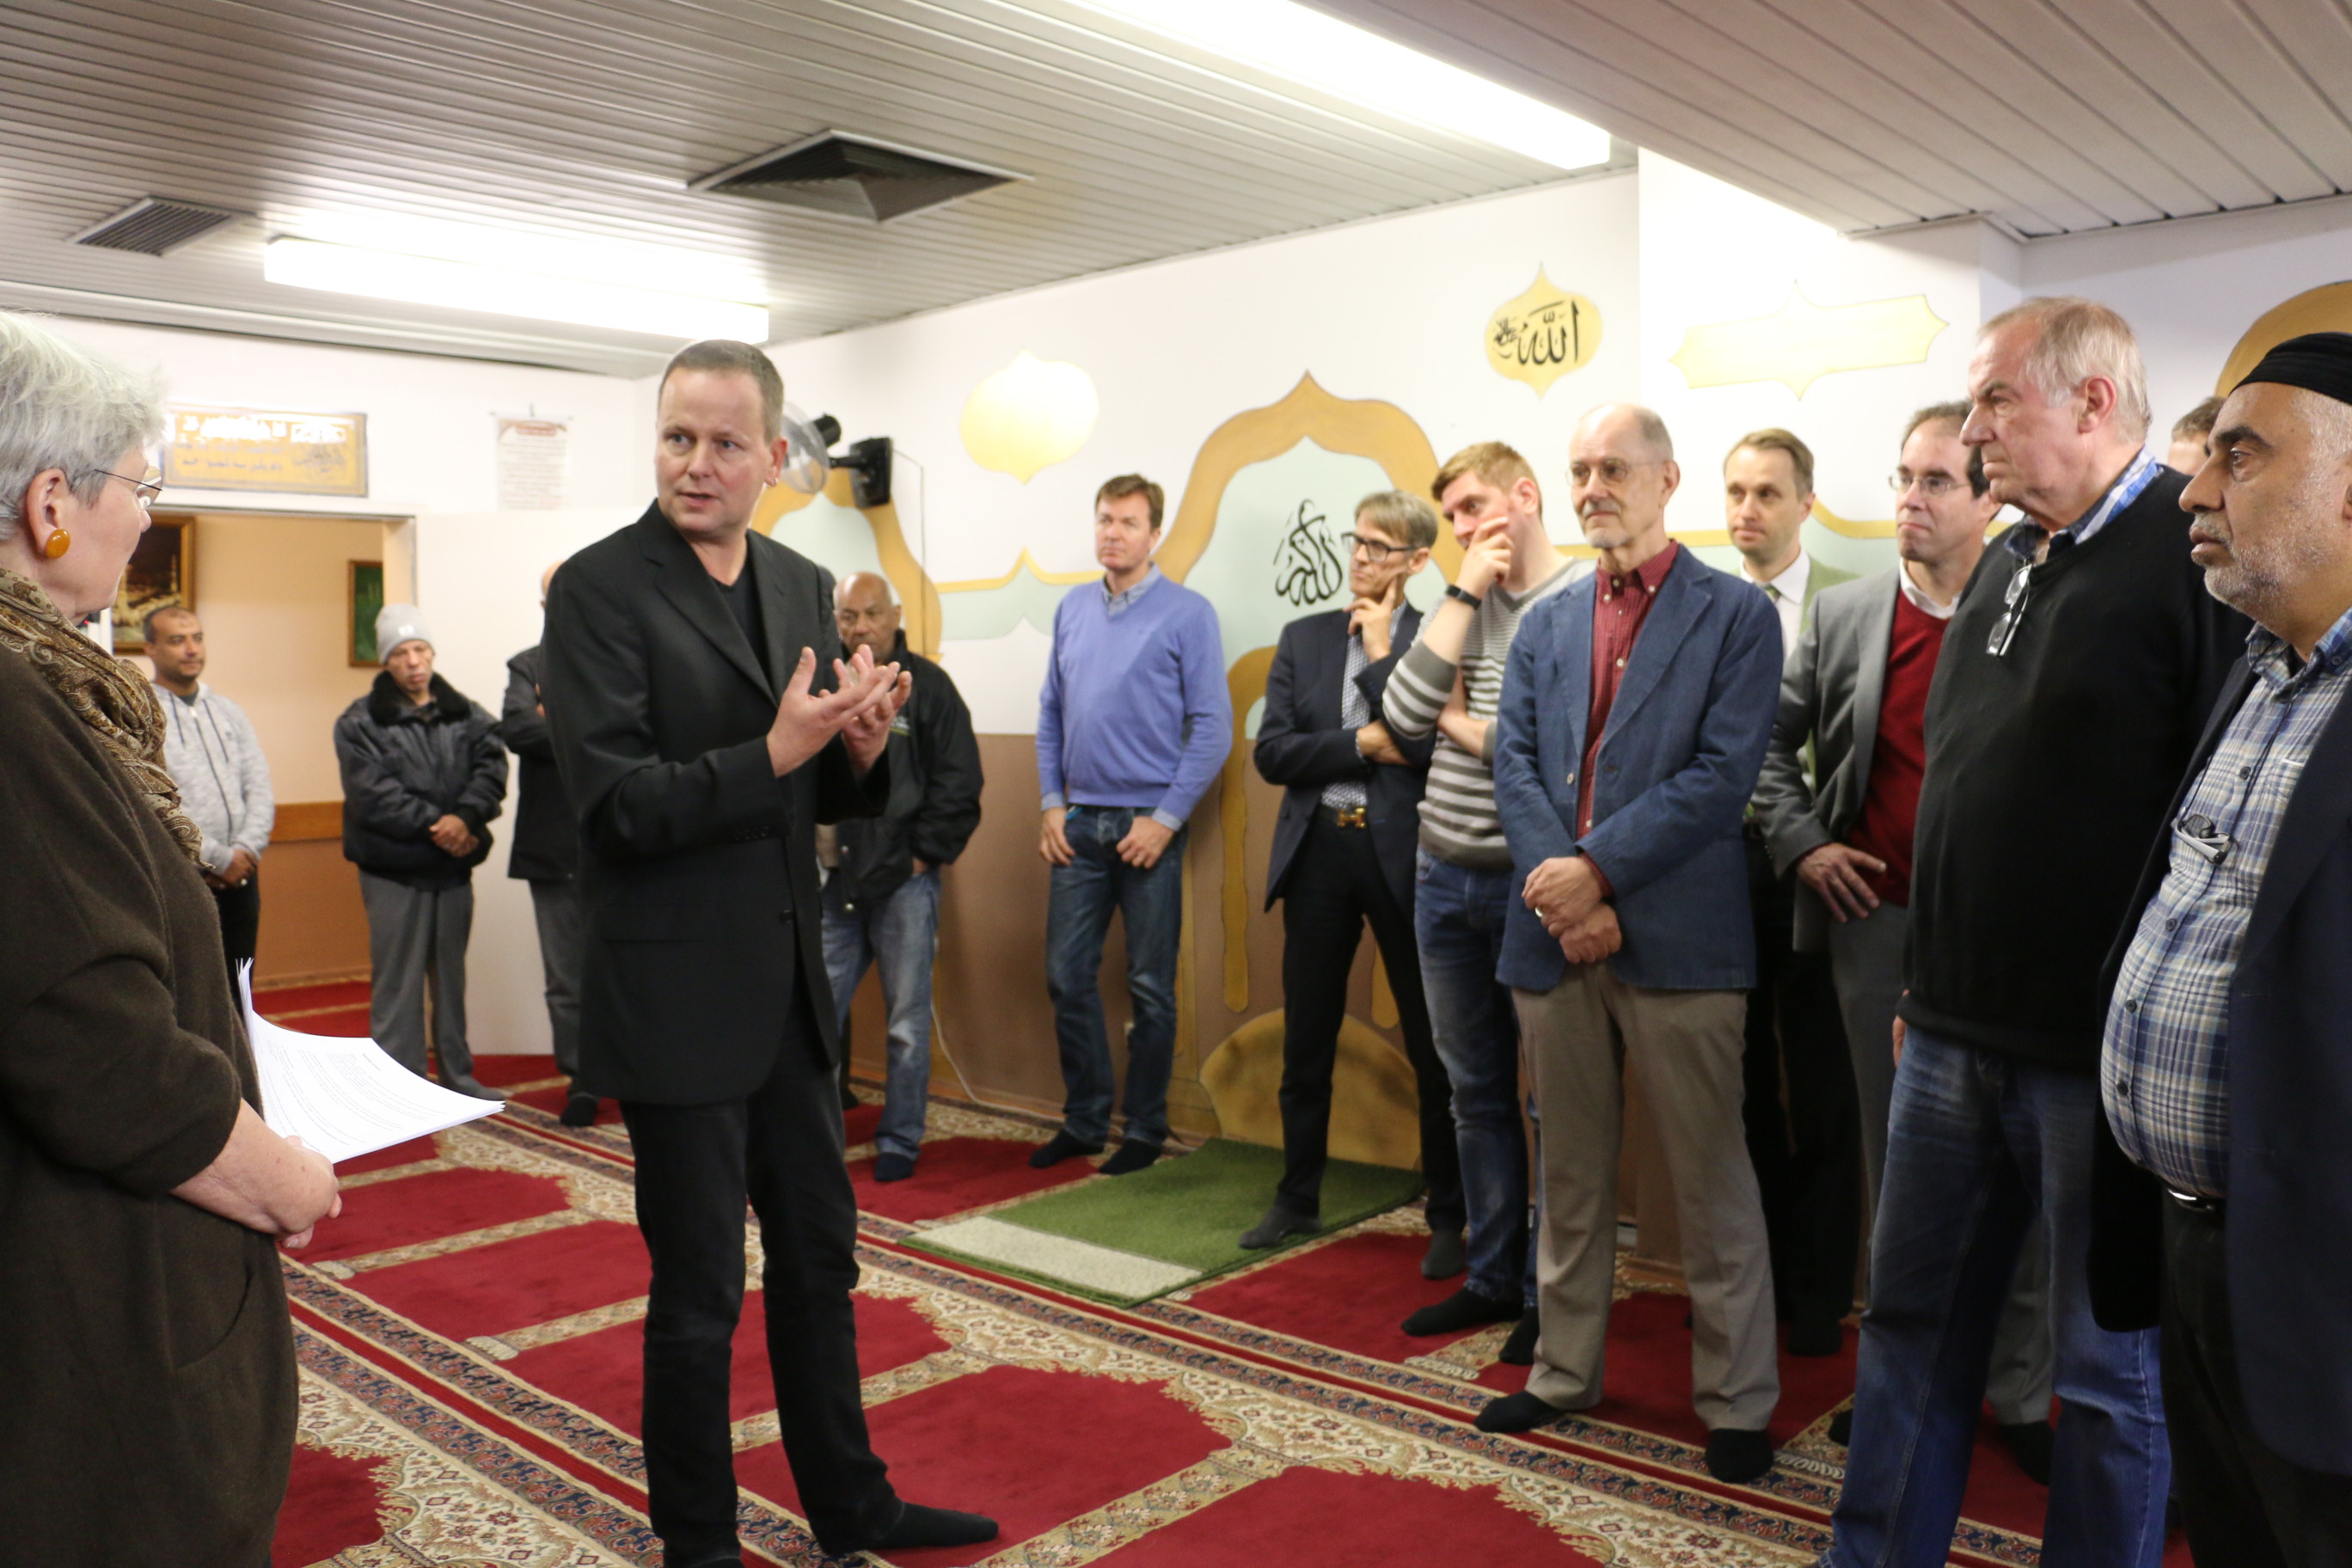 Islam meets LGBTI im Haus der Weisheit